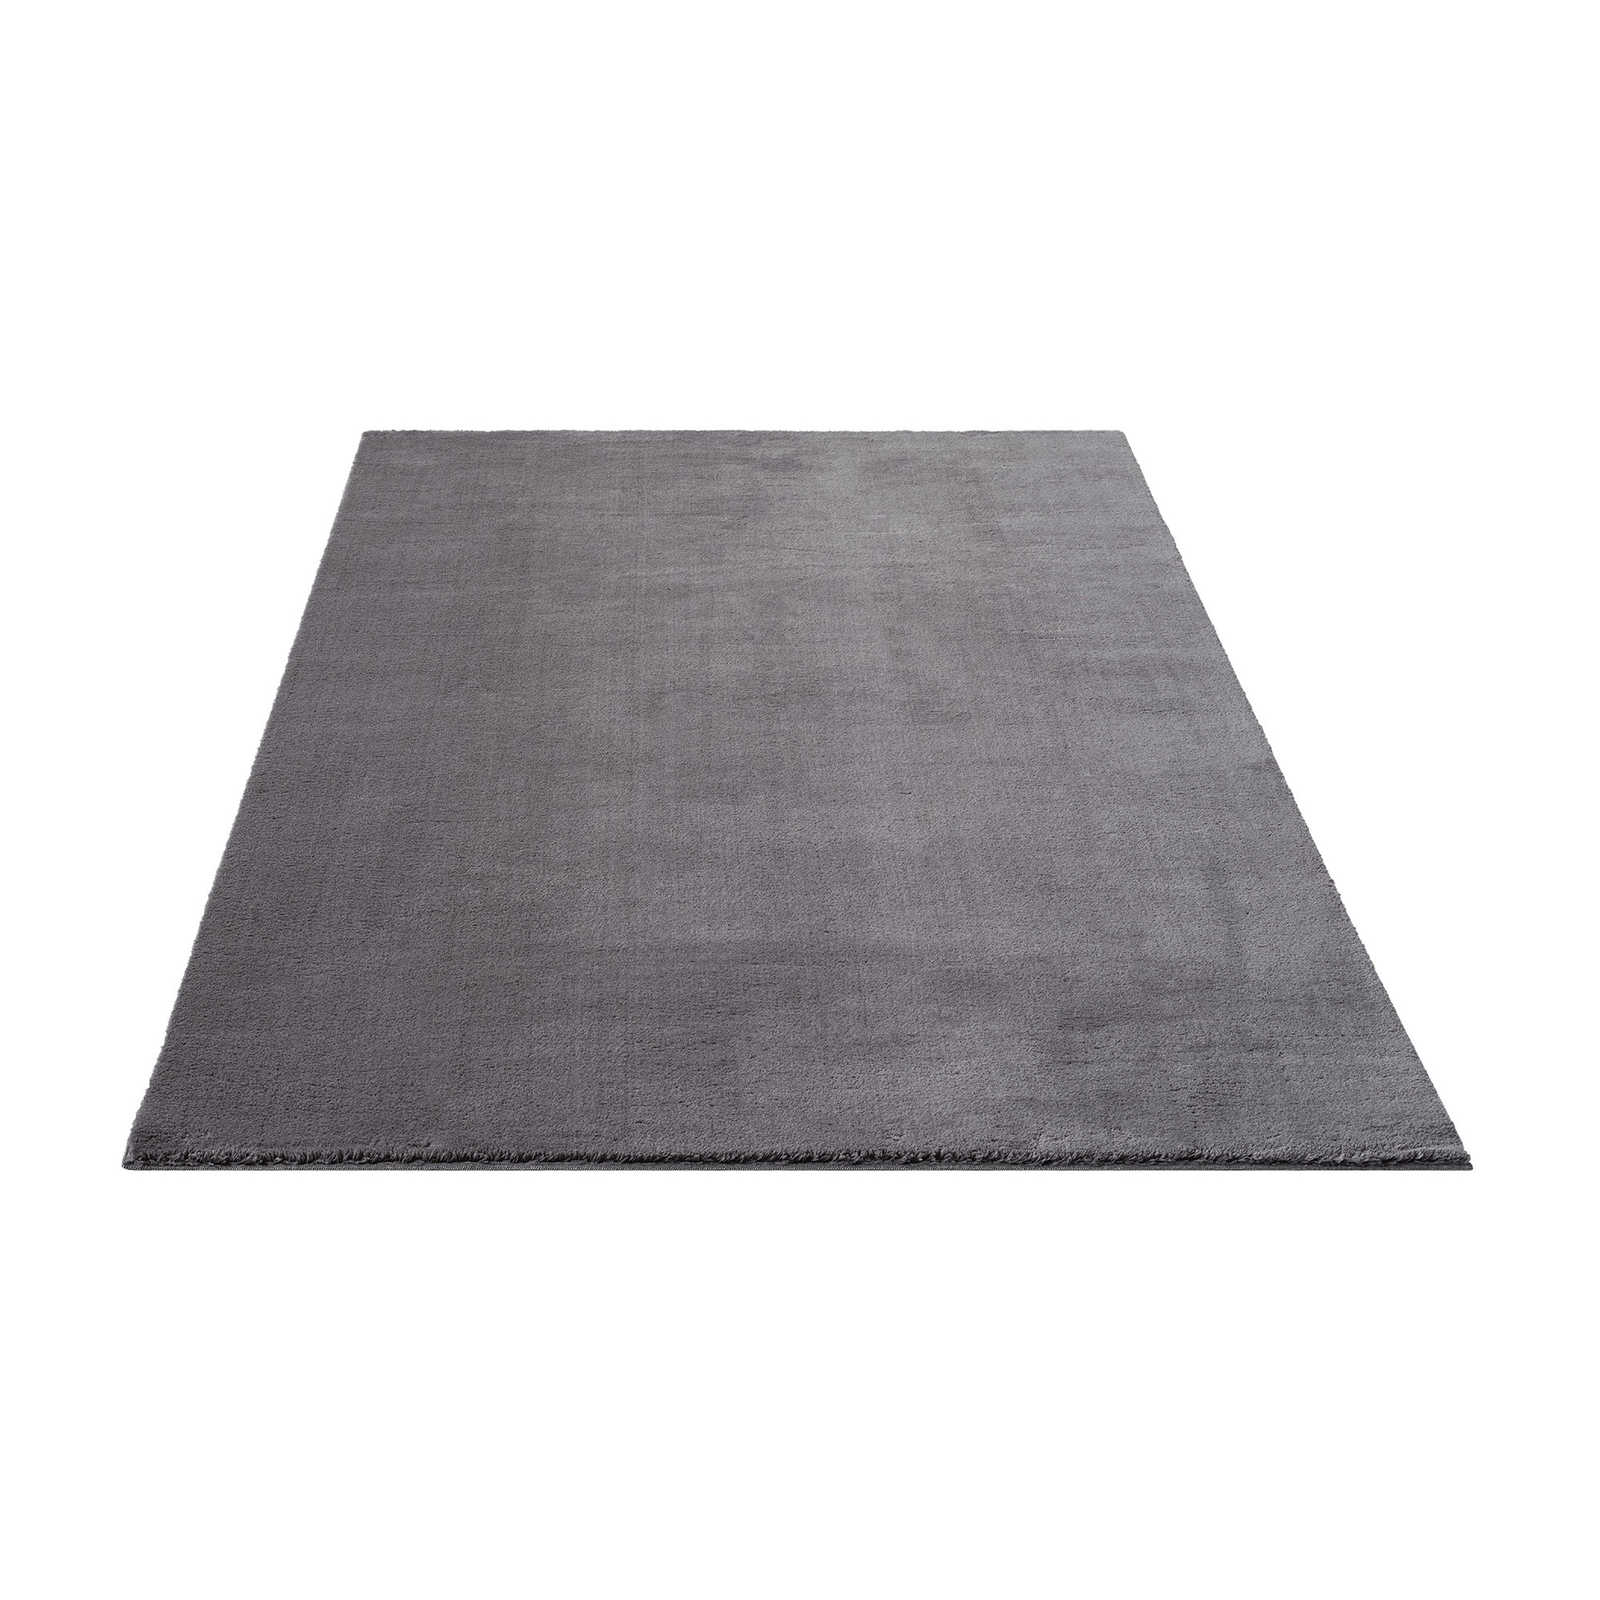 Pluizig hoogpolig tapijt in antraciet - 290 x 200 cm
